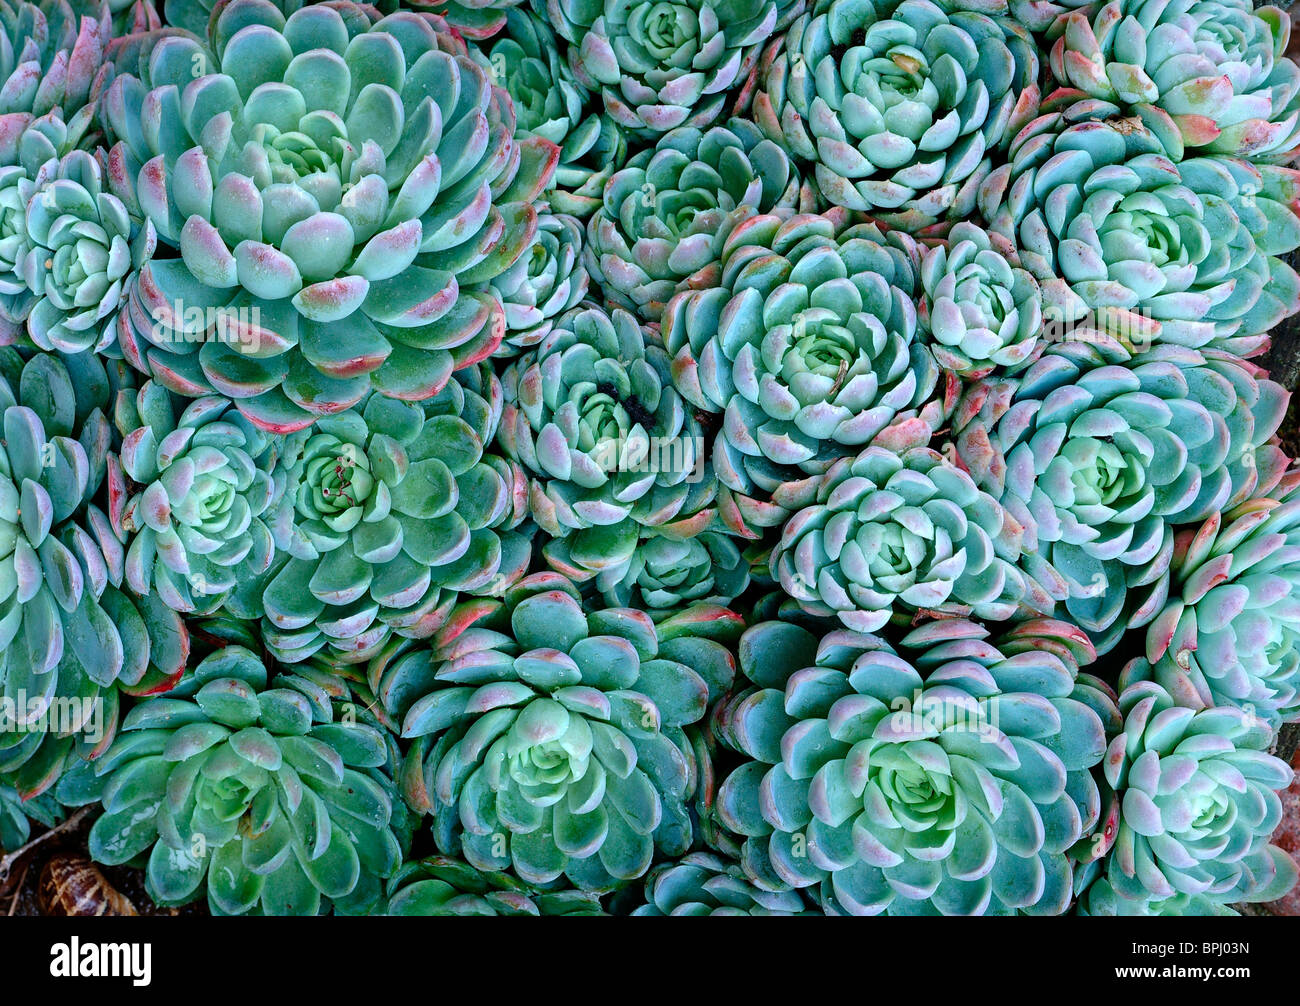 Green Sempervivum Houseleek succulent plants - closeup Stock Photo